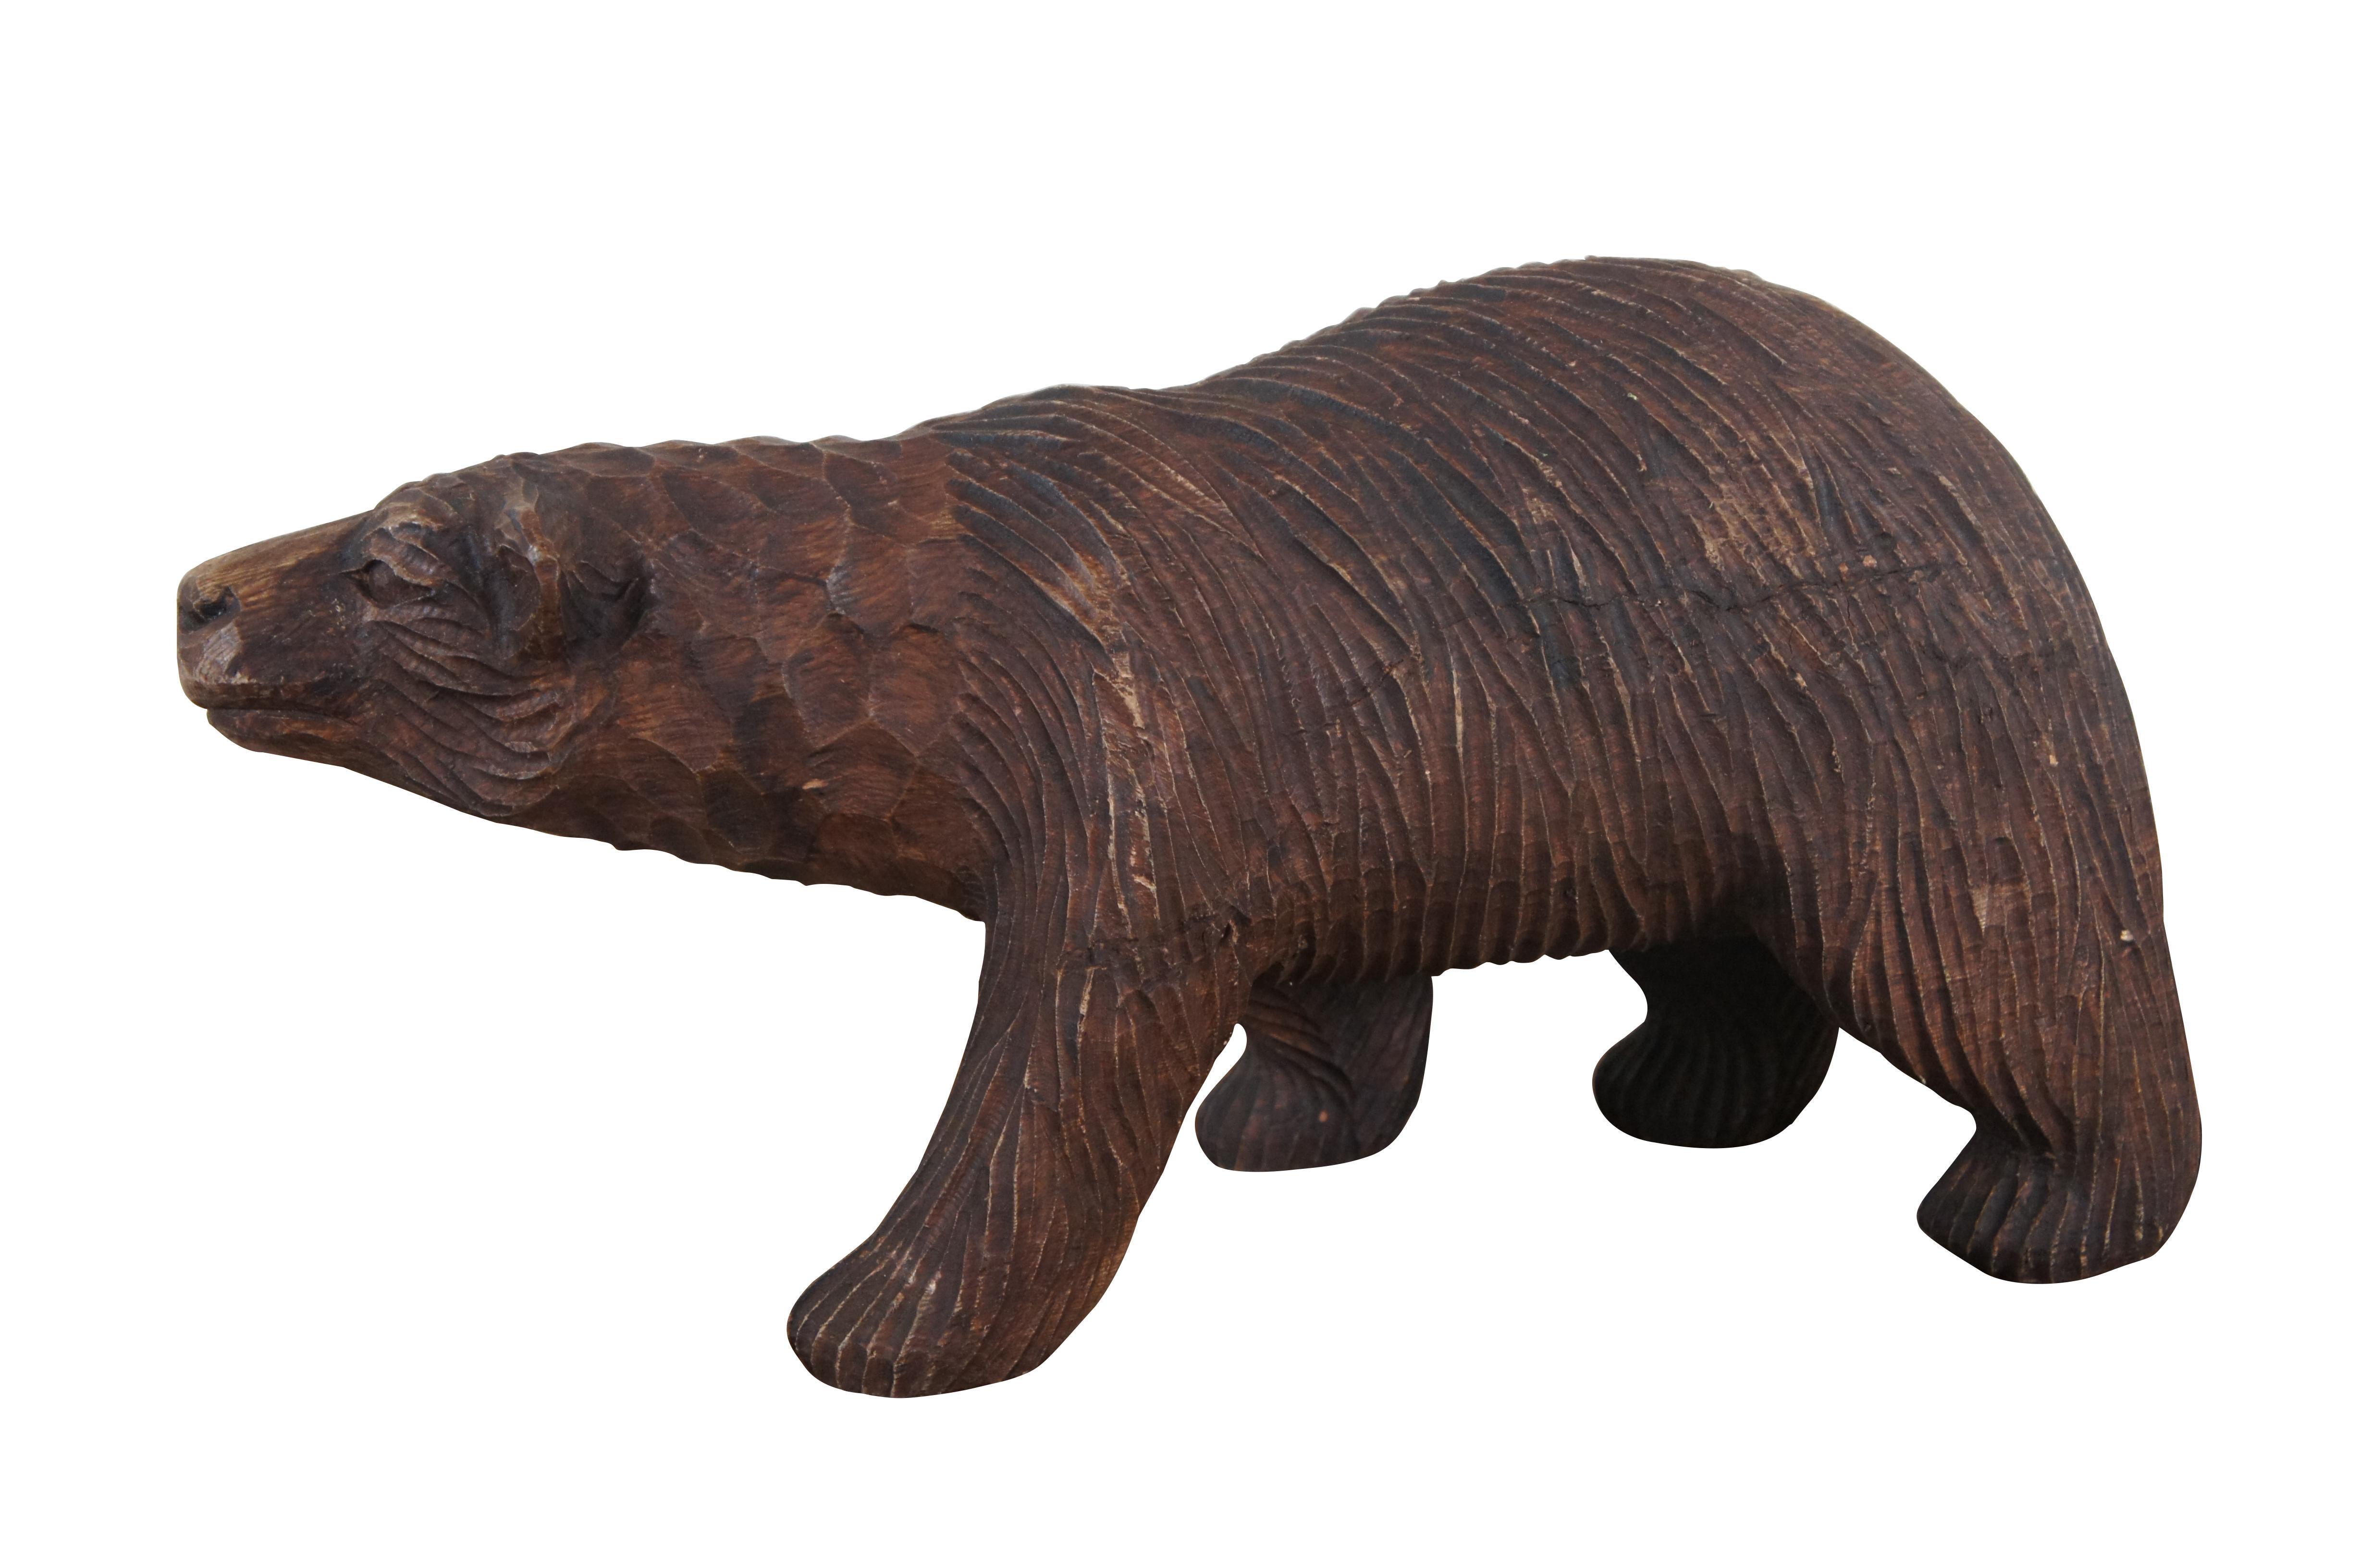 Vintage sculpture en bois de fer sculpté / figurine en forme d'ours grizzly marchant à quatre pattes. Décoration de pavillon de chasse rustique.

Dimensions :
18